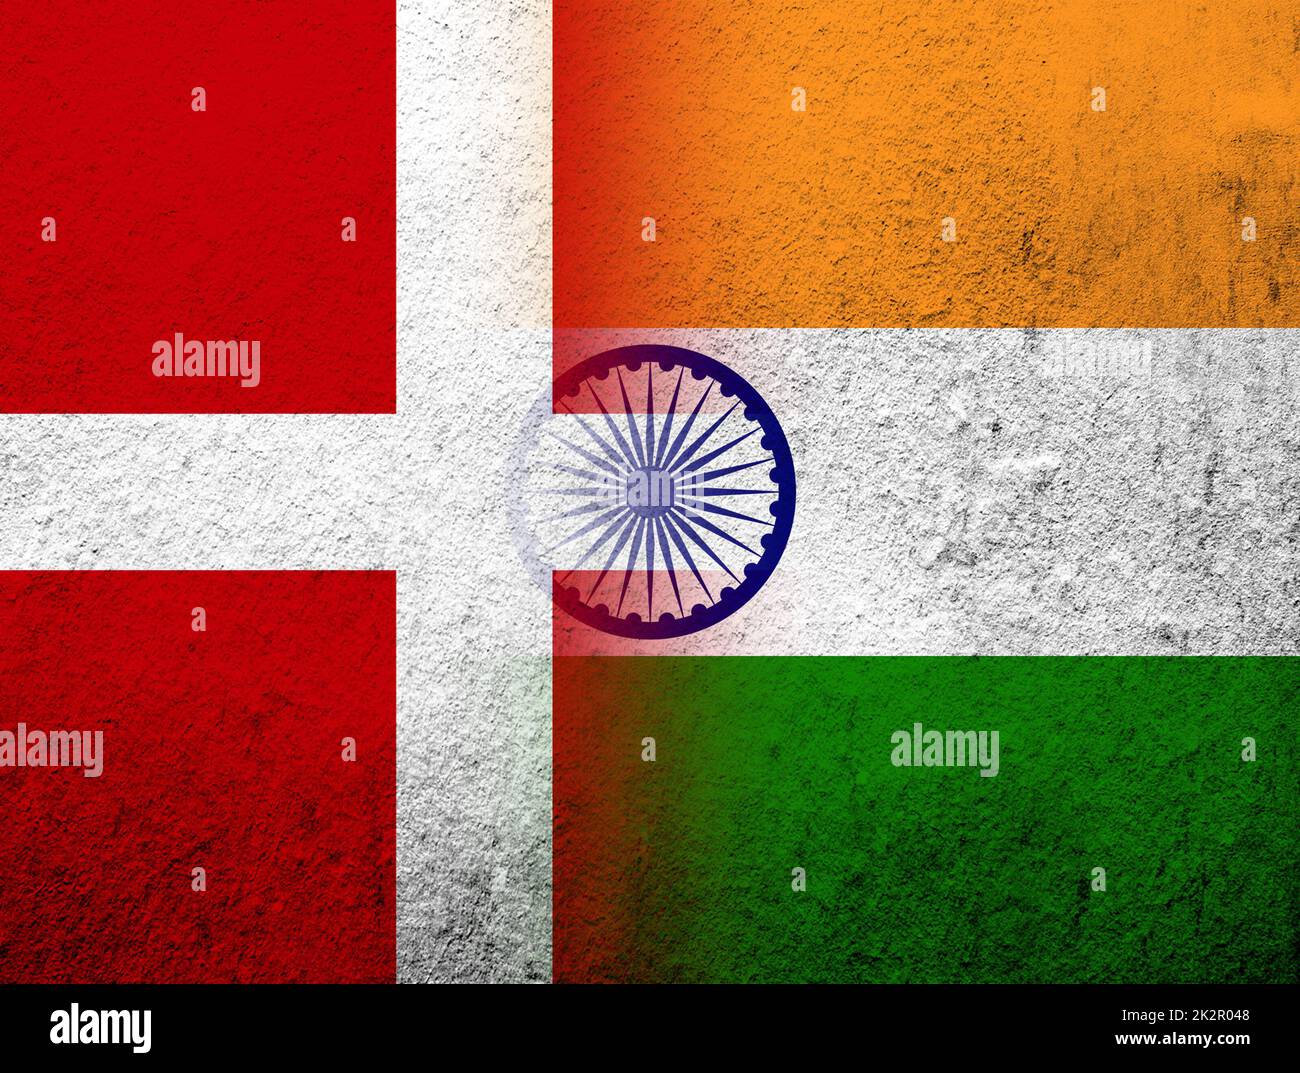 Le Royaume du Danemark drapeau national avec drapeau de l'Inde. Grunge l'arrière-plan Banque D'Images